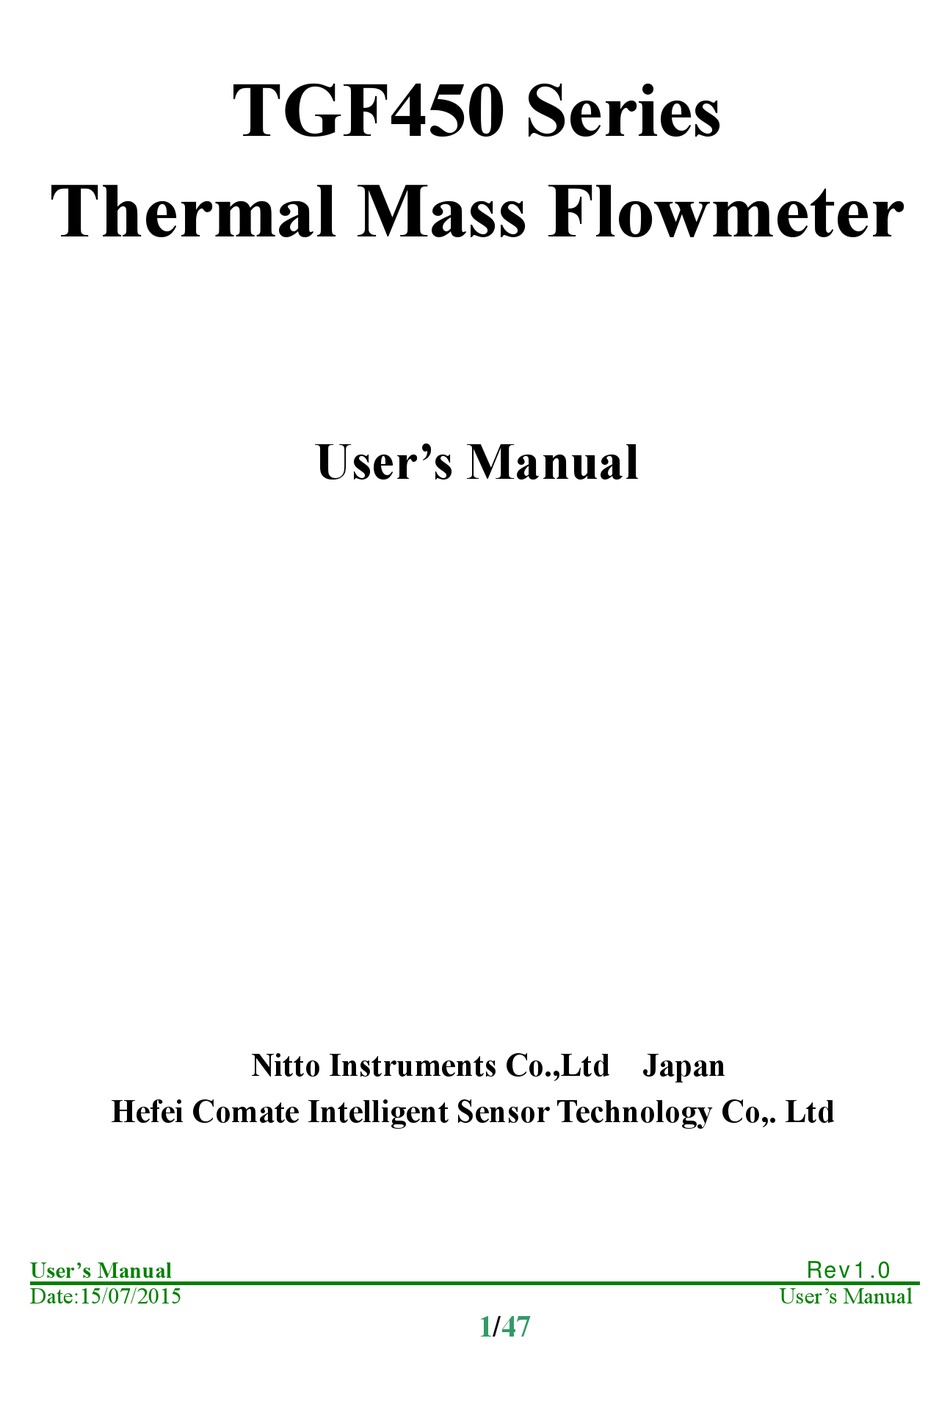 N1 Users Manual Users Manual  User manual, Manual, Transmitter